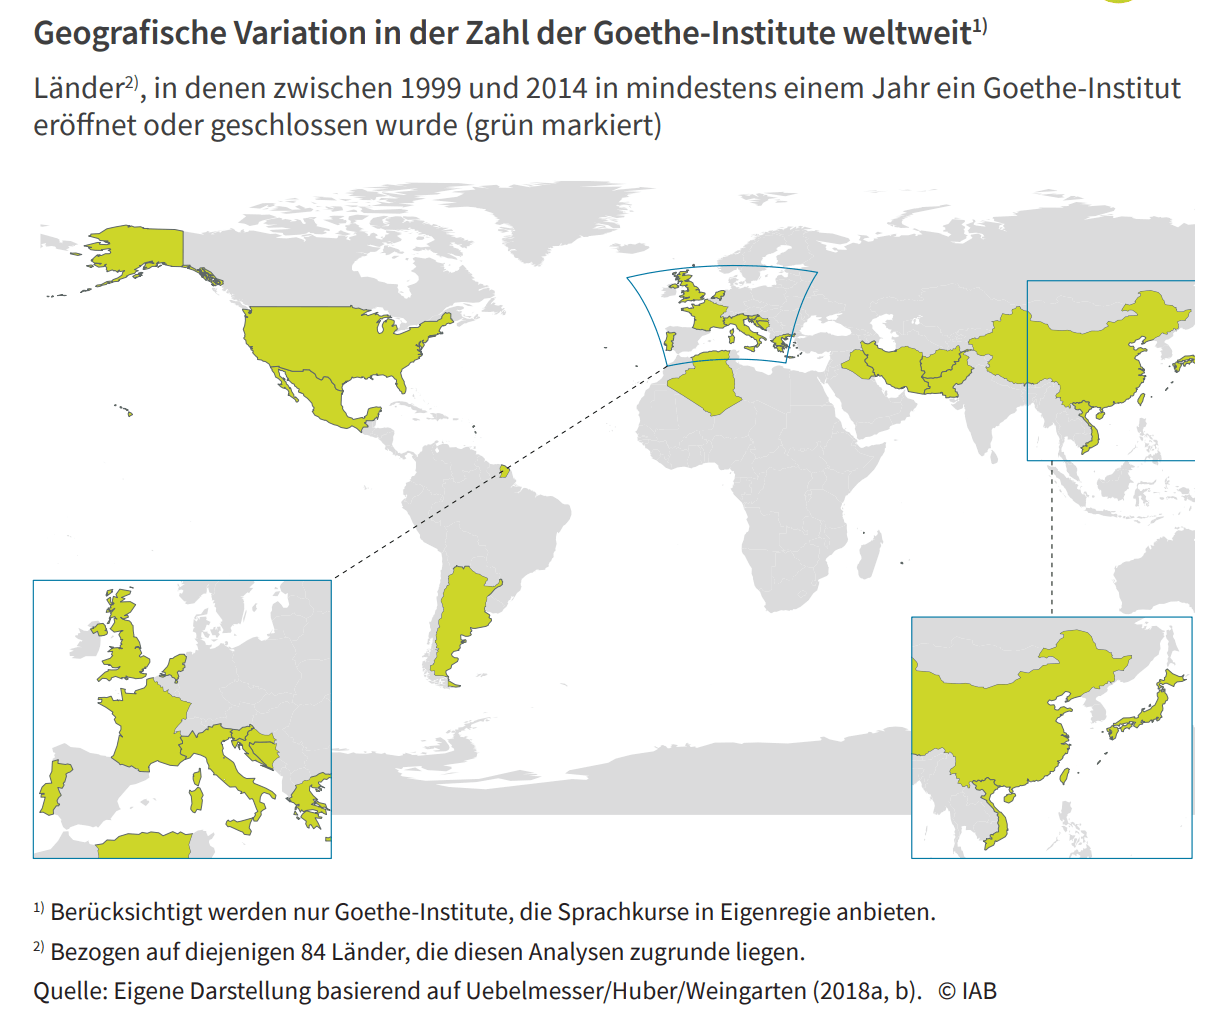 Sprachkurse bei Goethe-Instituten – Geografische Variation